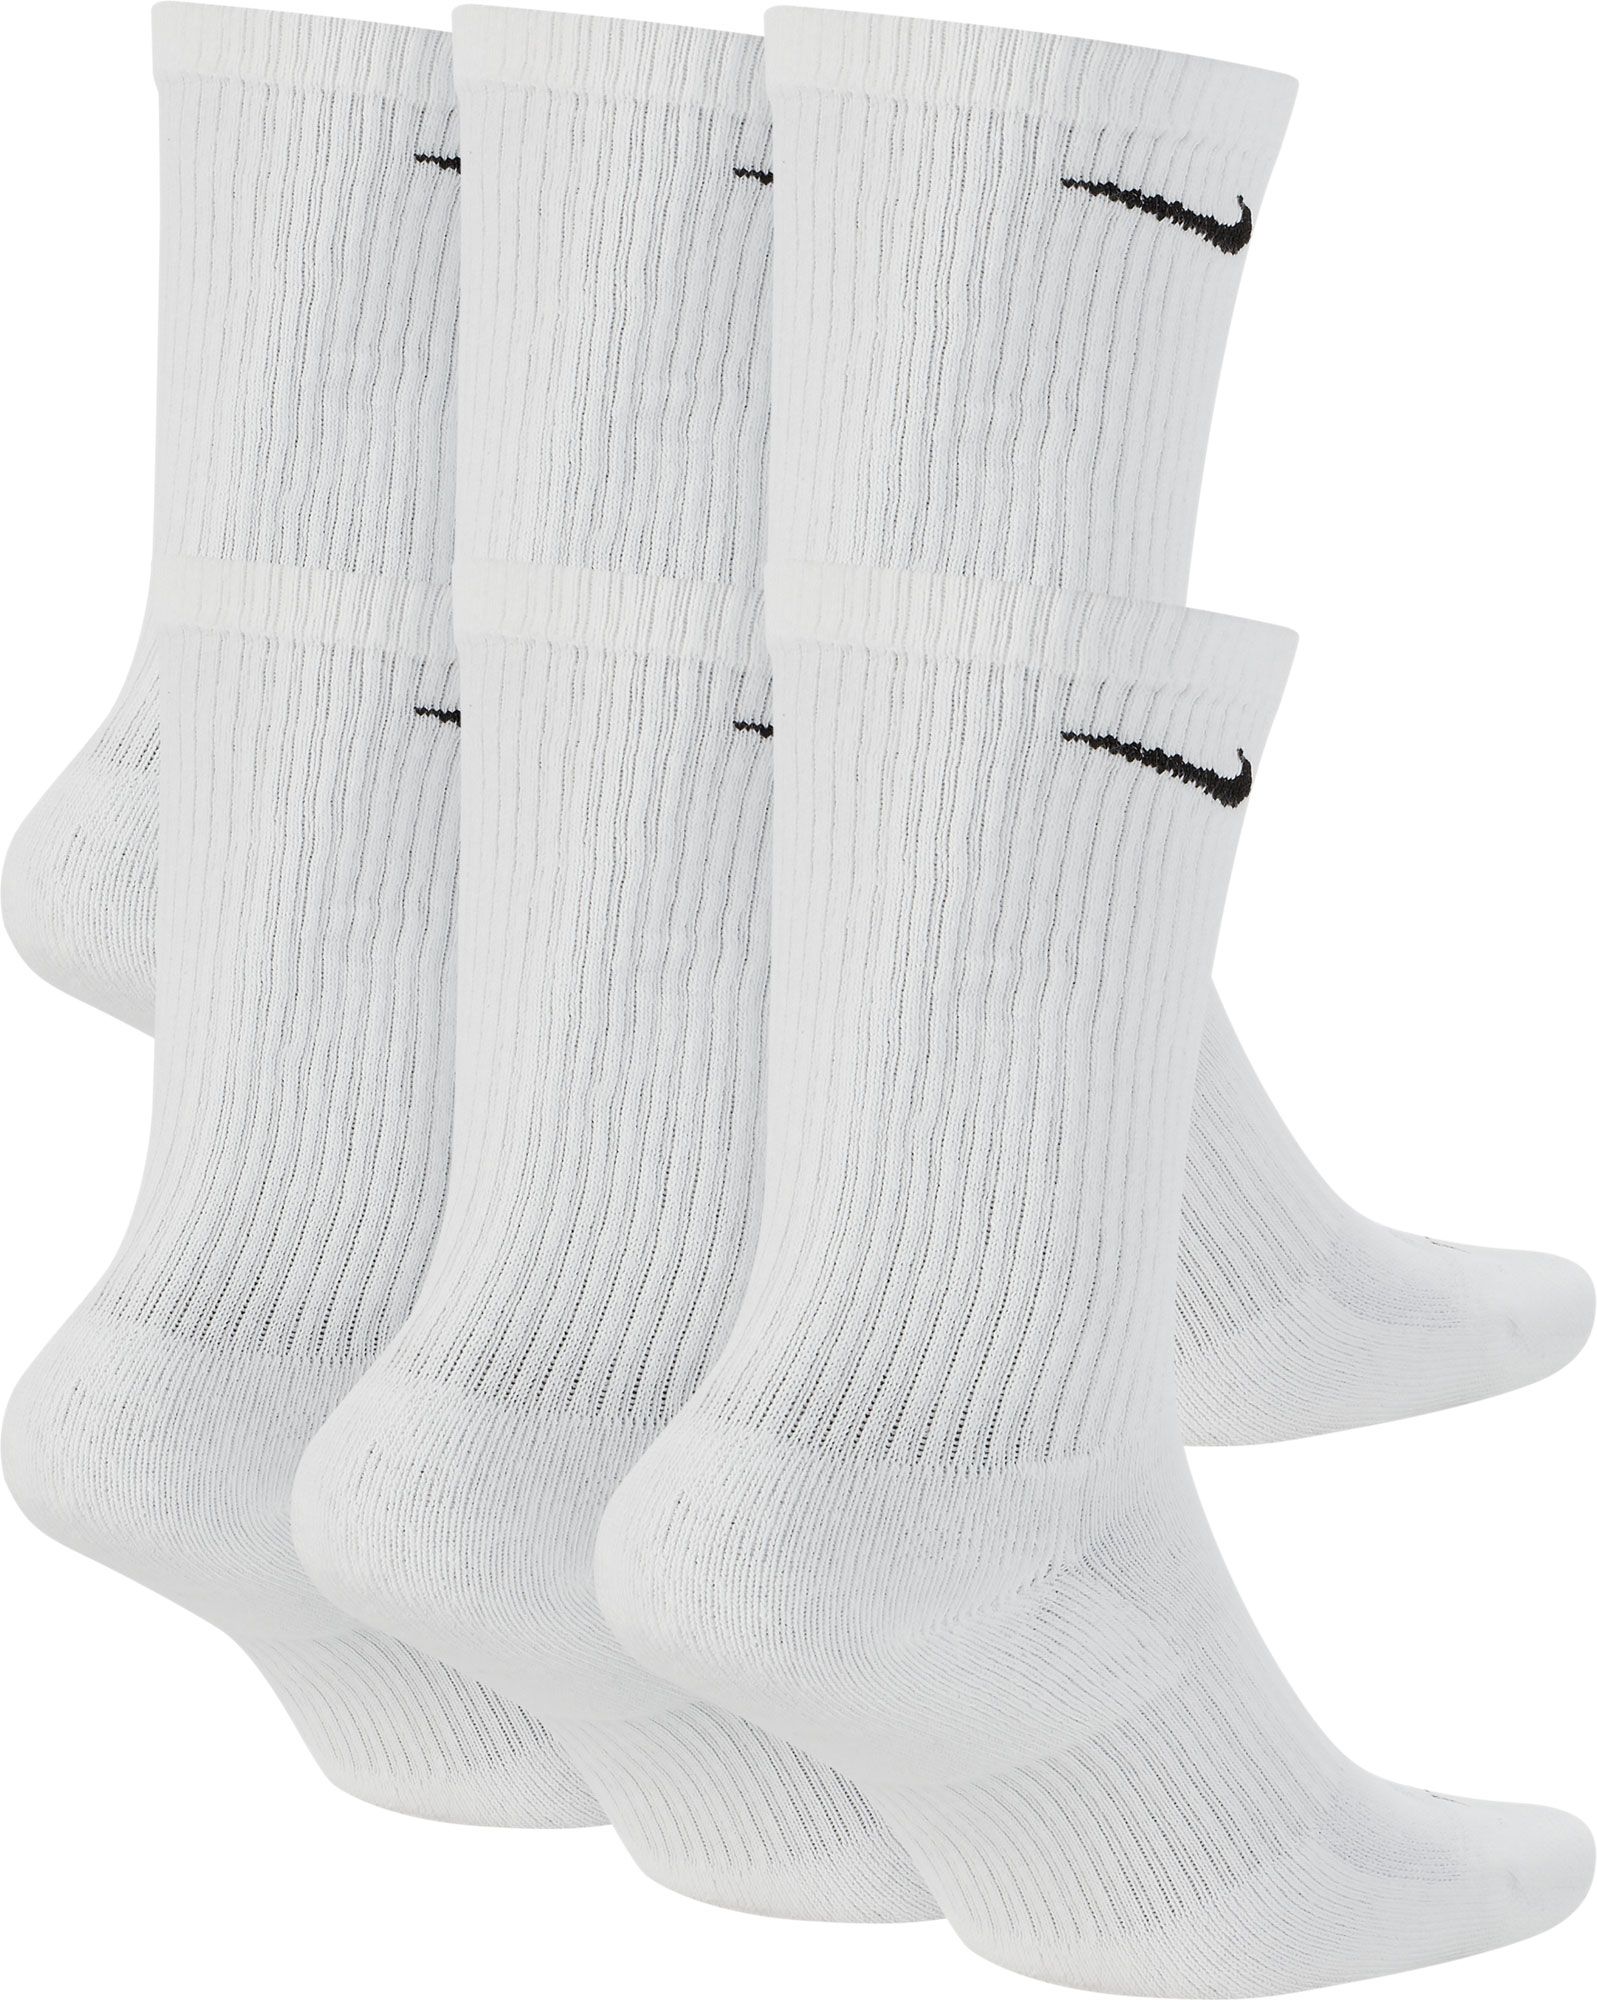 mens white nike socks 6 pack